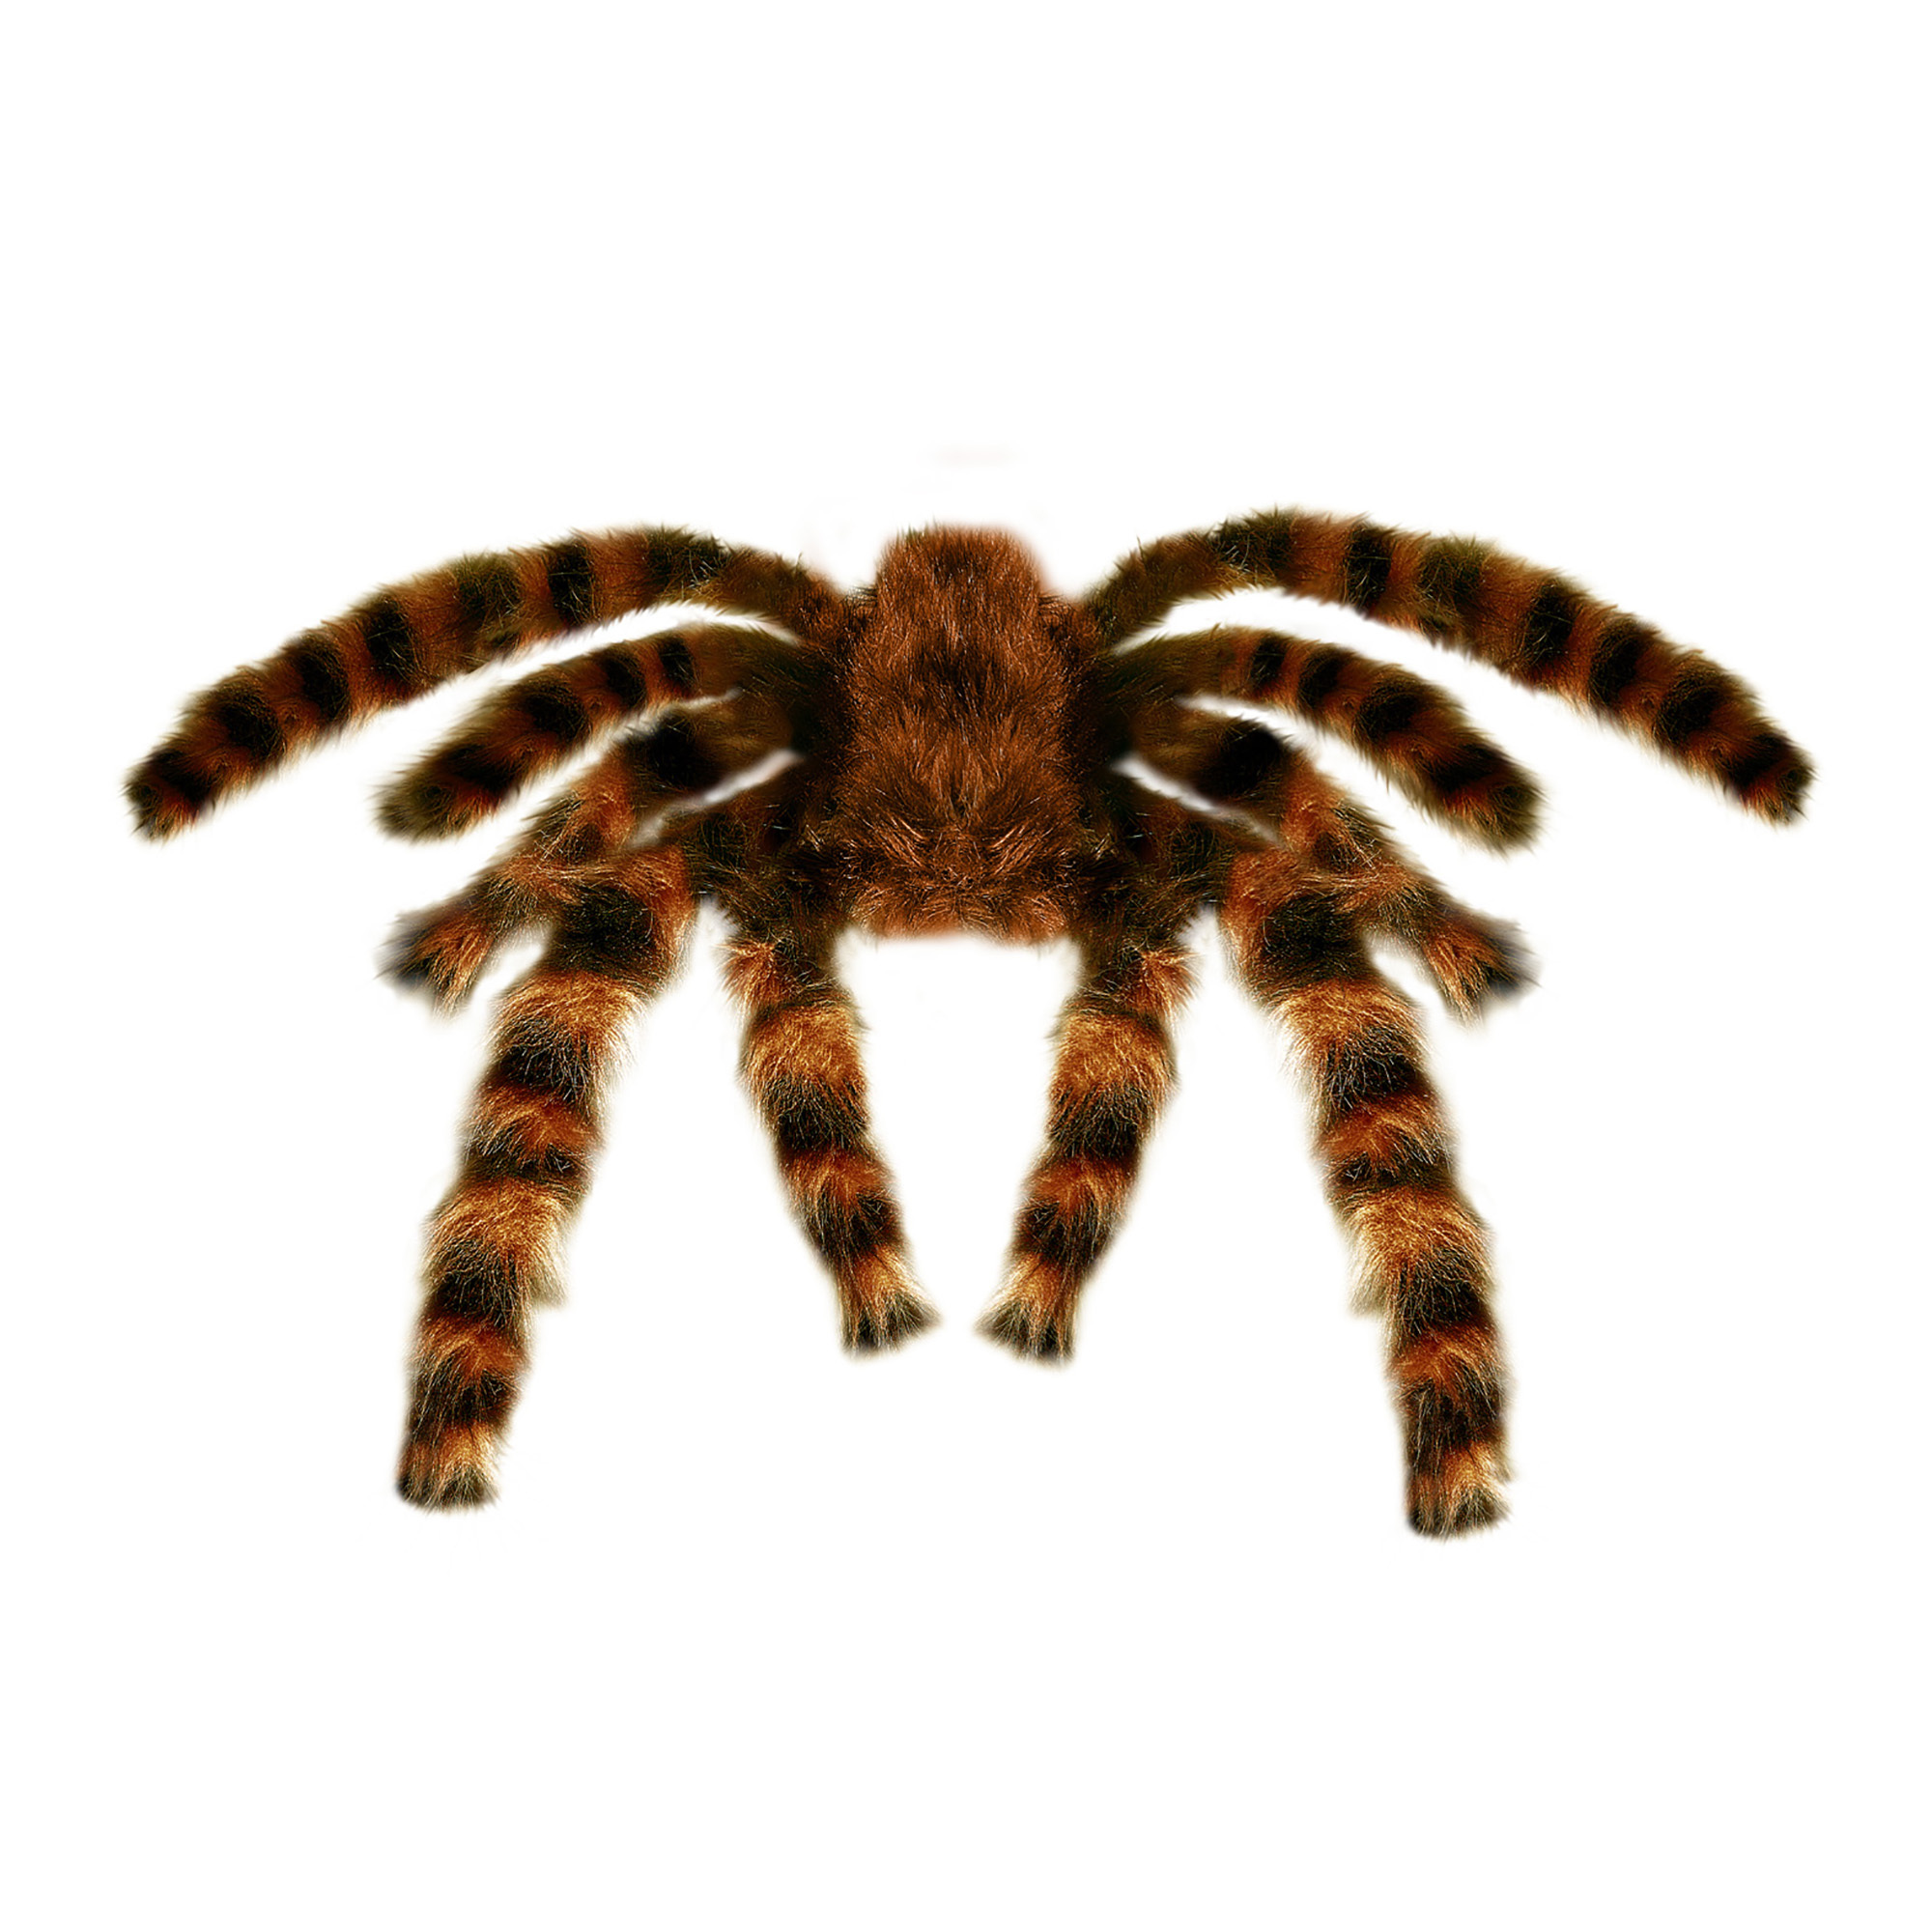 Grote harige spin mega spin buigbaar